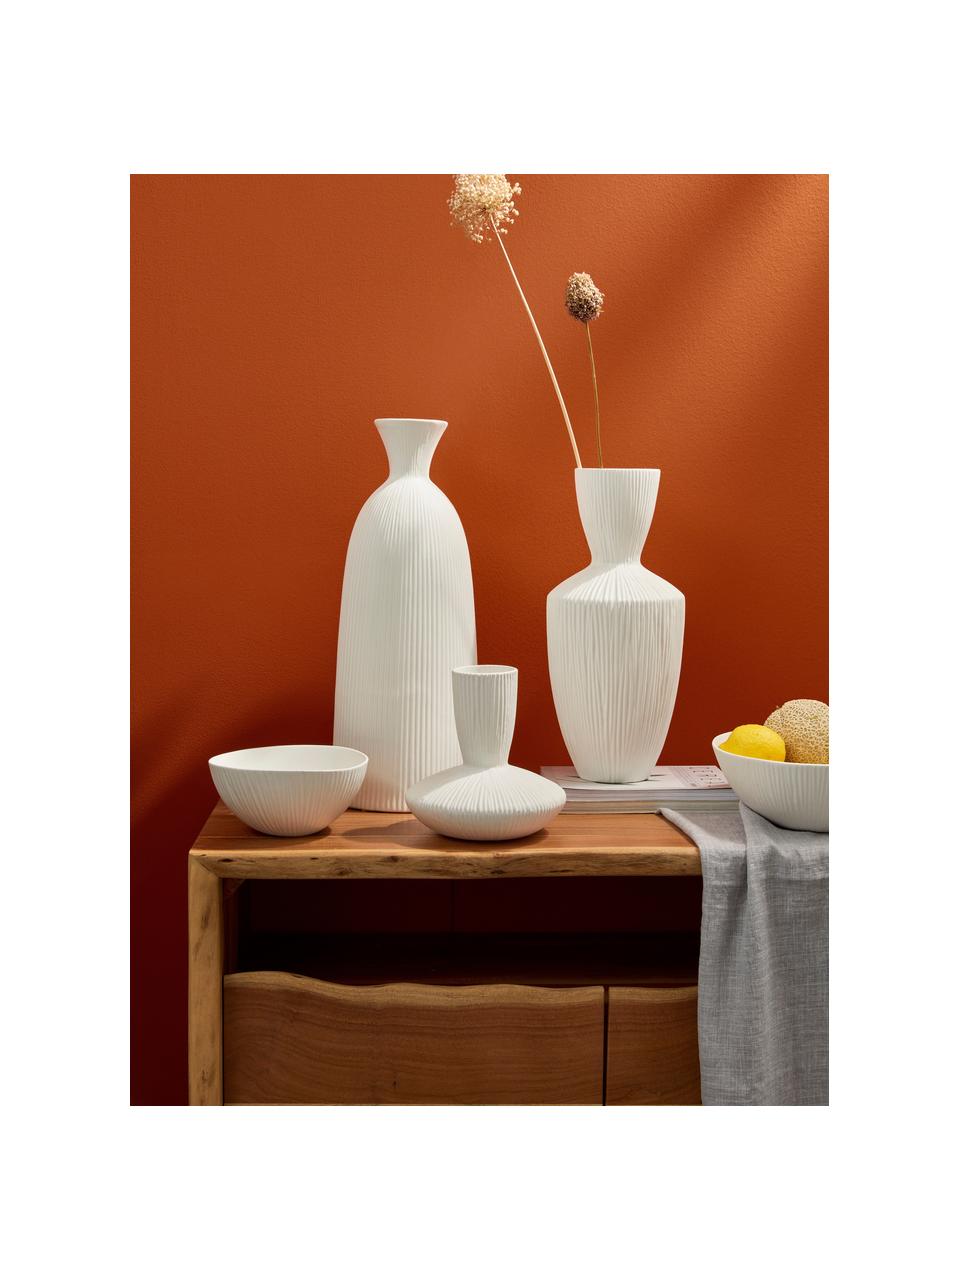 Keramická dizajnová váza Striped, V 23 cm, Keramika, Biela, Ø 22 x V 23 cm